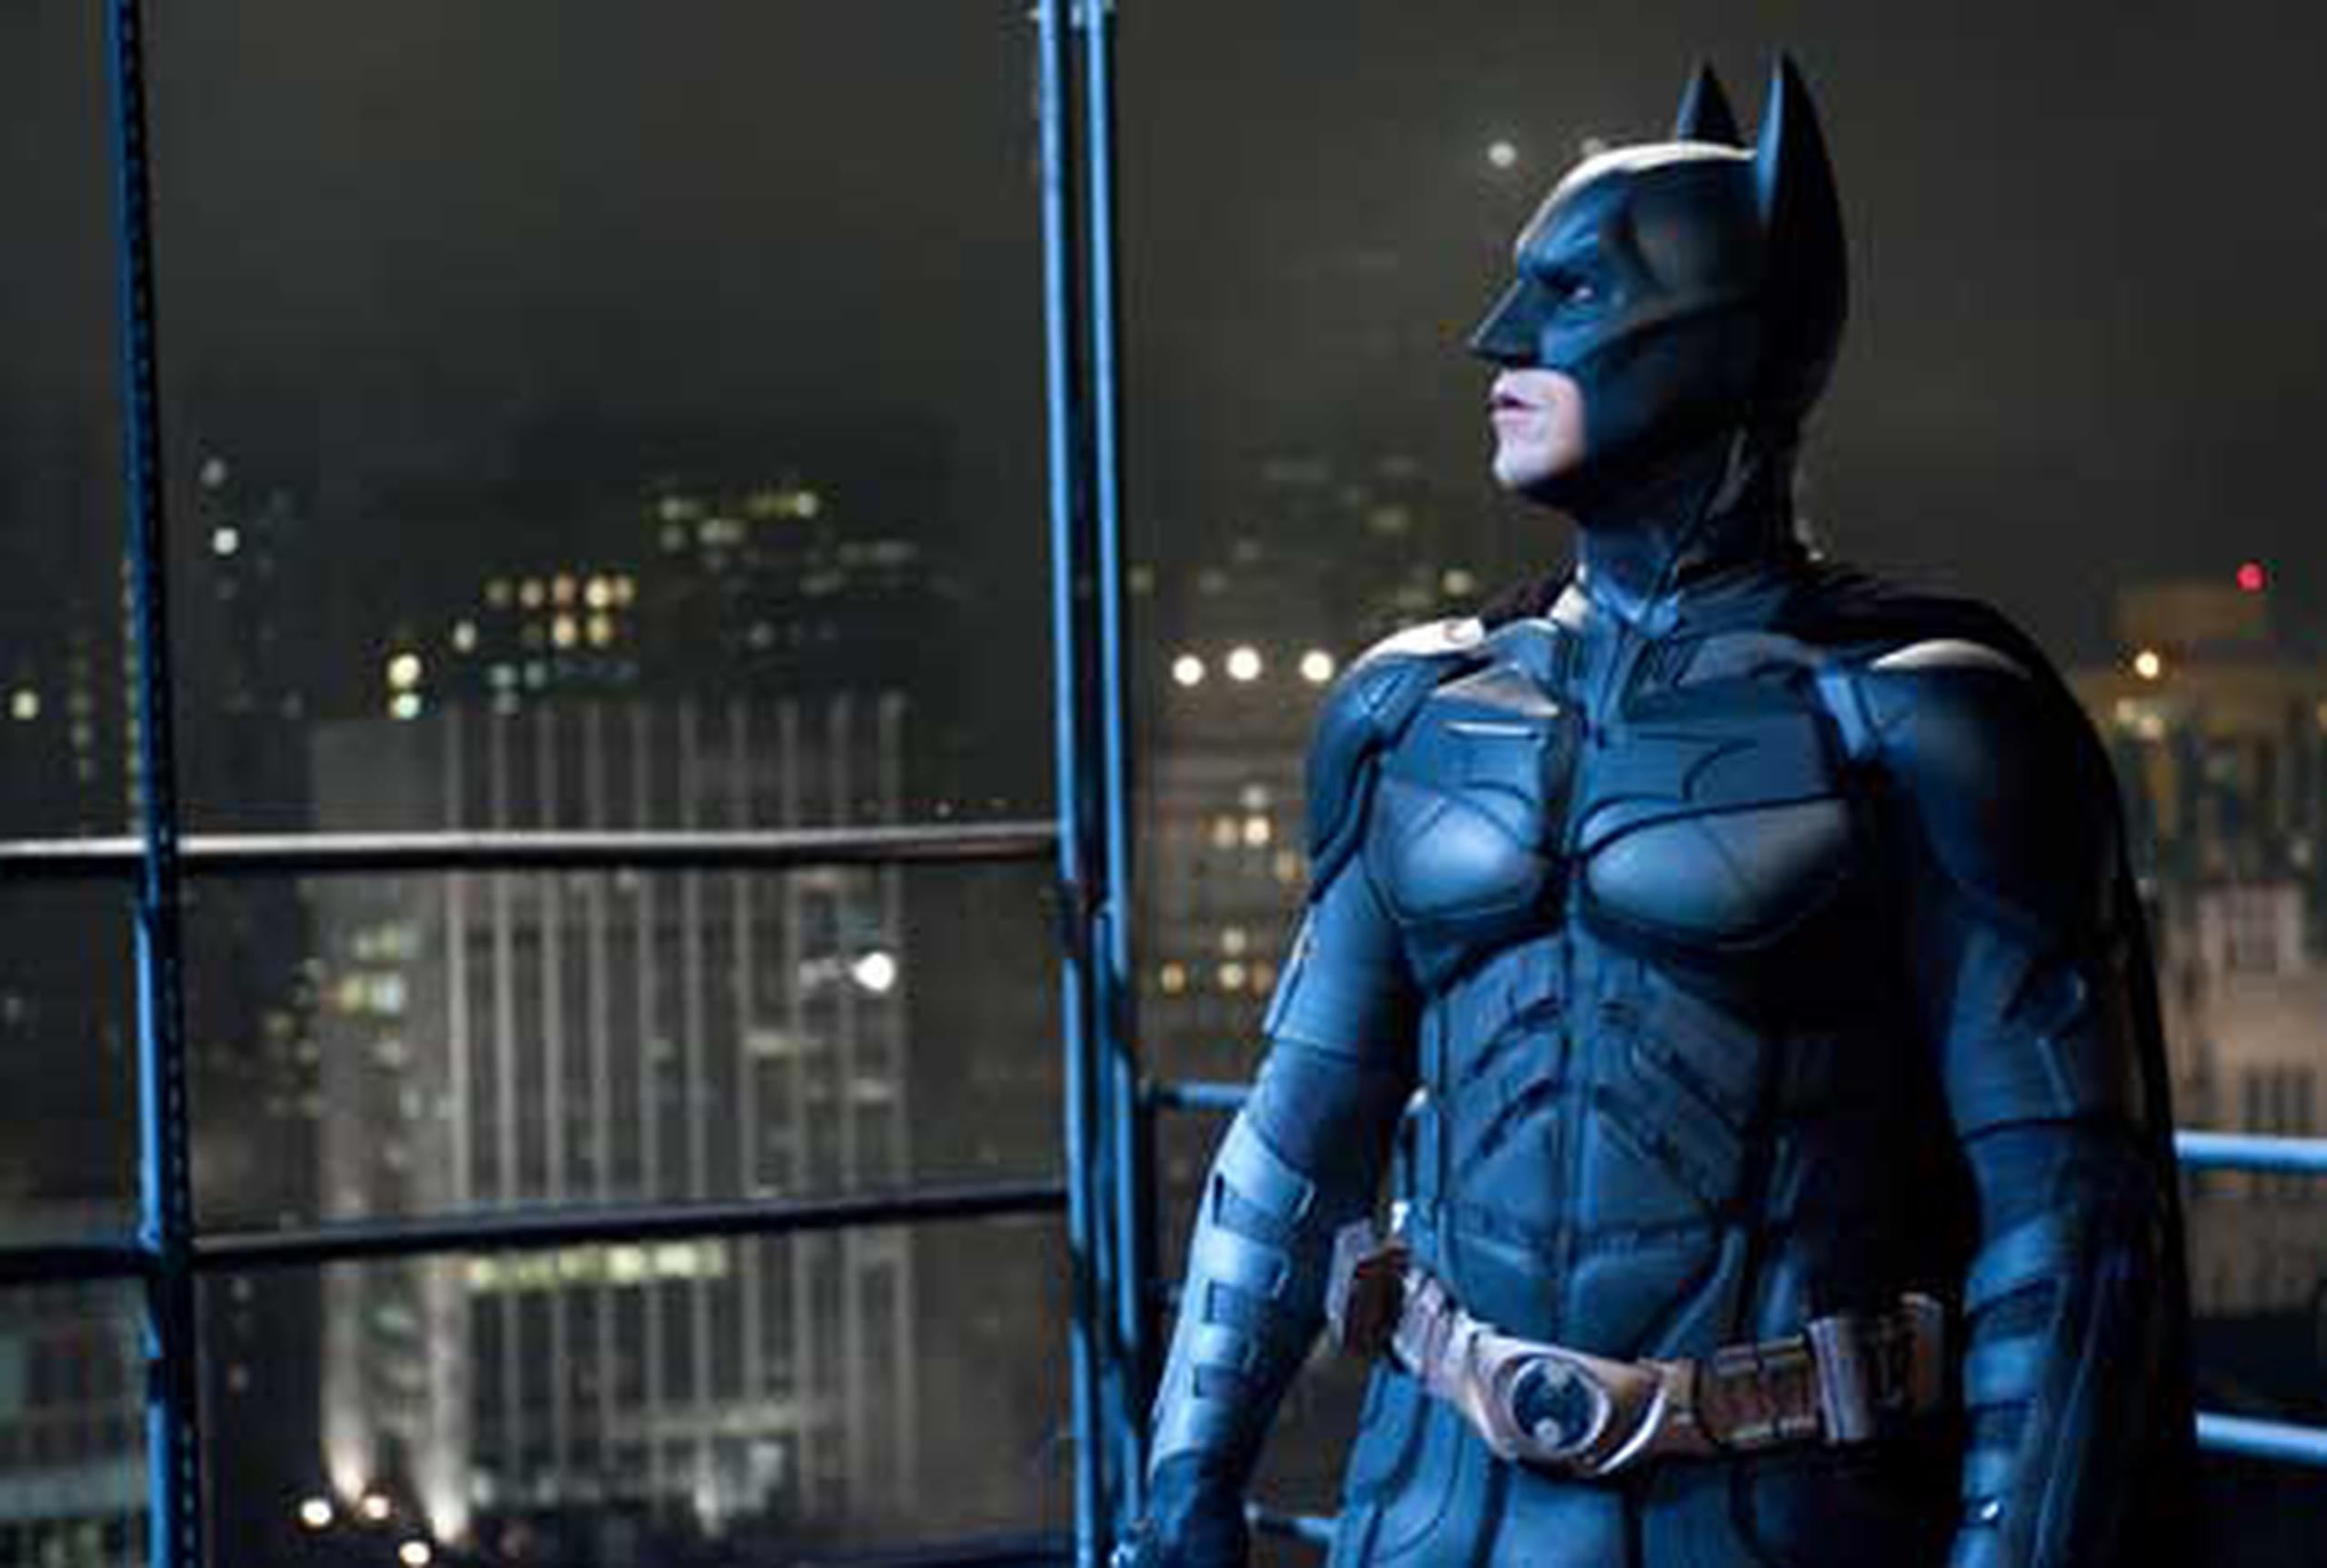 Pocos culpan a Hollywood de masacre en estreno de Batman - Primera Hora